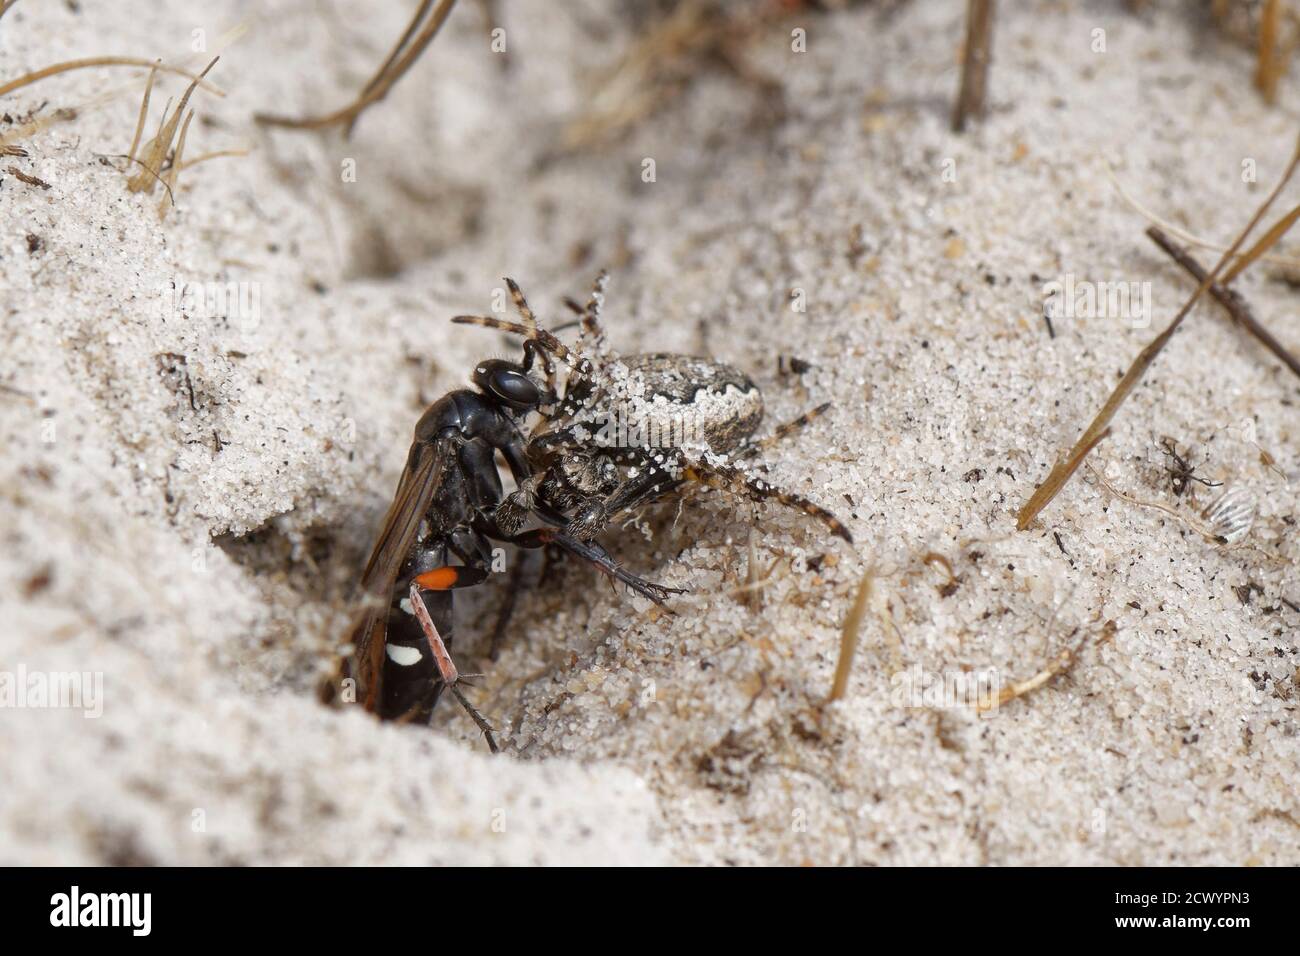 Vespa ragno a zampe rosse (Episyron rufipes) che trascina un tessitore orb del settore mancante (Zygiella x-notata) nel suo burrone nido in una brughiera sabbiosa, Dorset, Regno Unito. Foto Stock